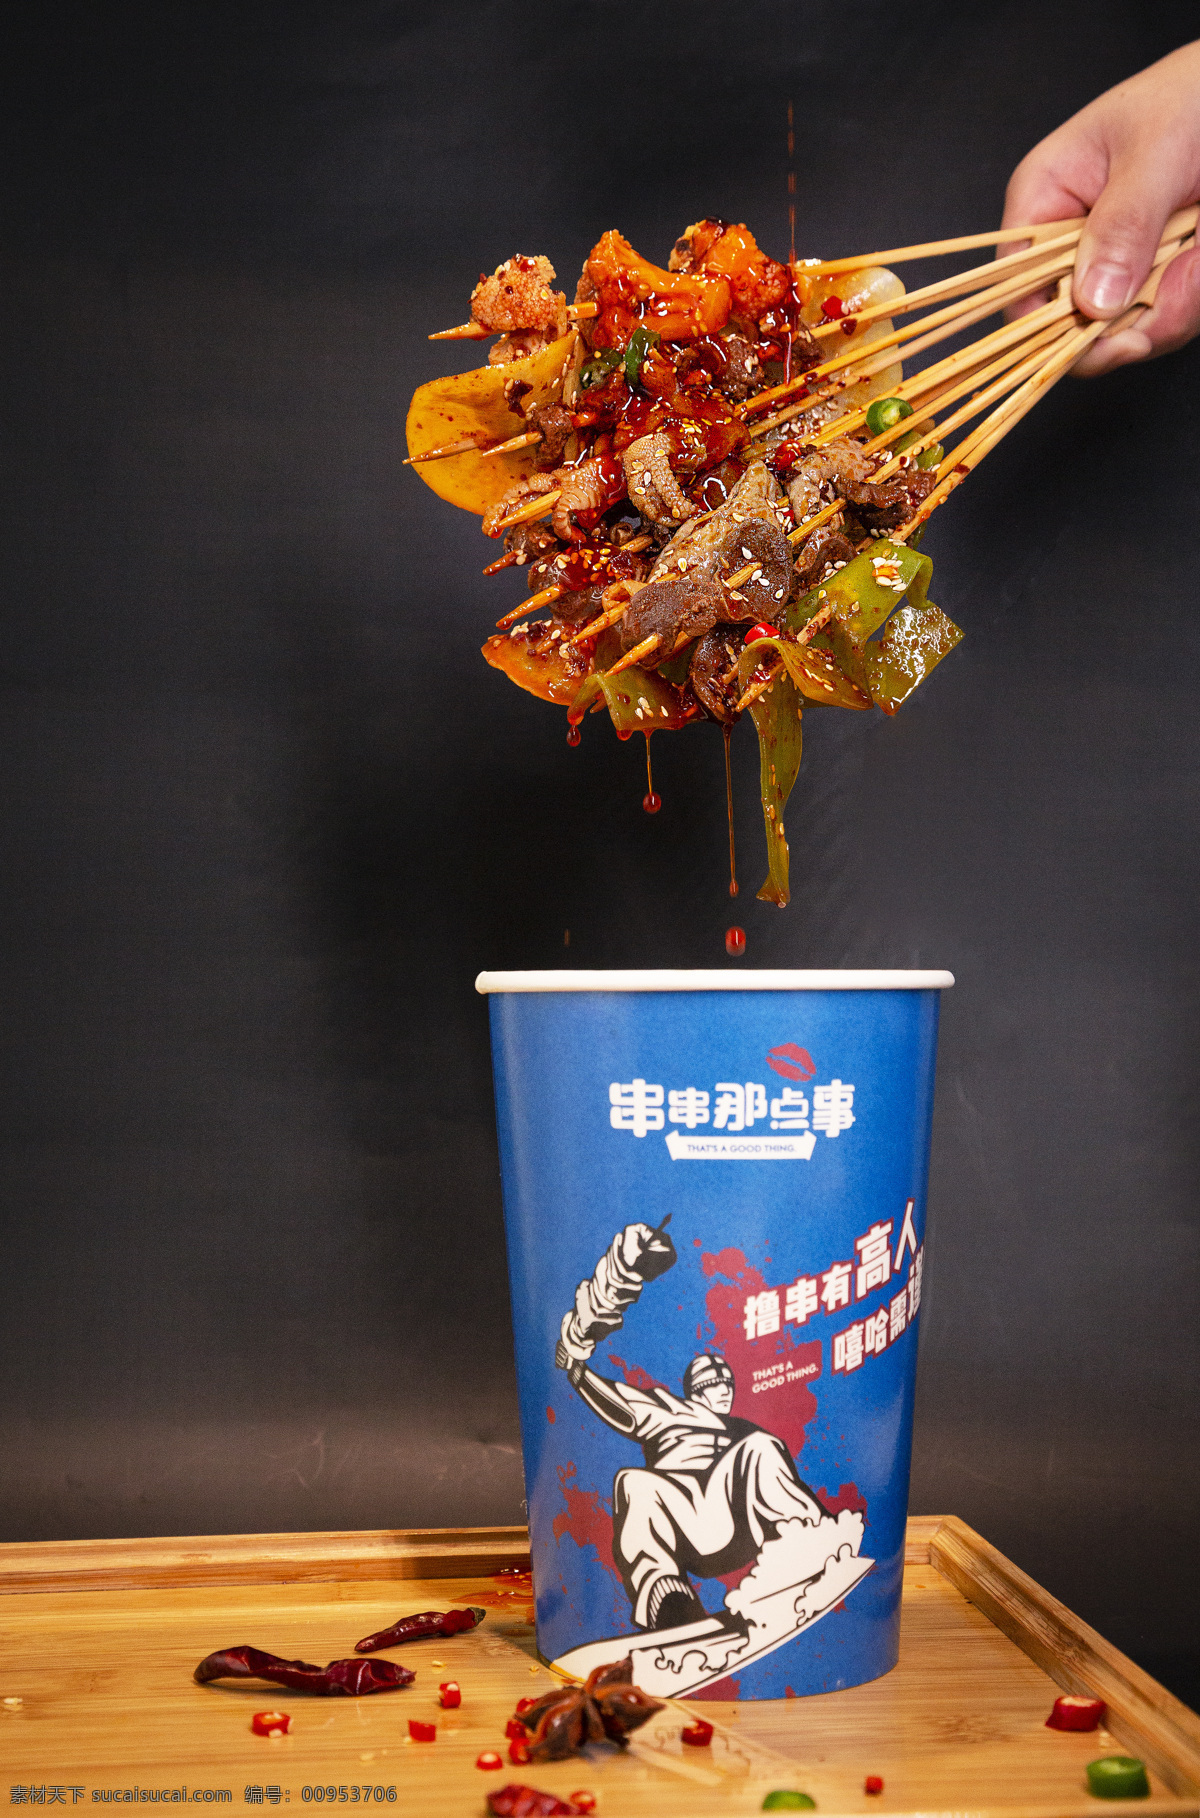 冷锅串串图片 串串 冷锅串串 锛锛鸡 麻辣串串 串串美食 串串摄影 美食摄影 餐饮美食 传统美食